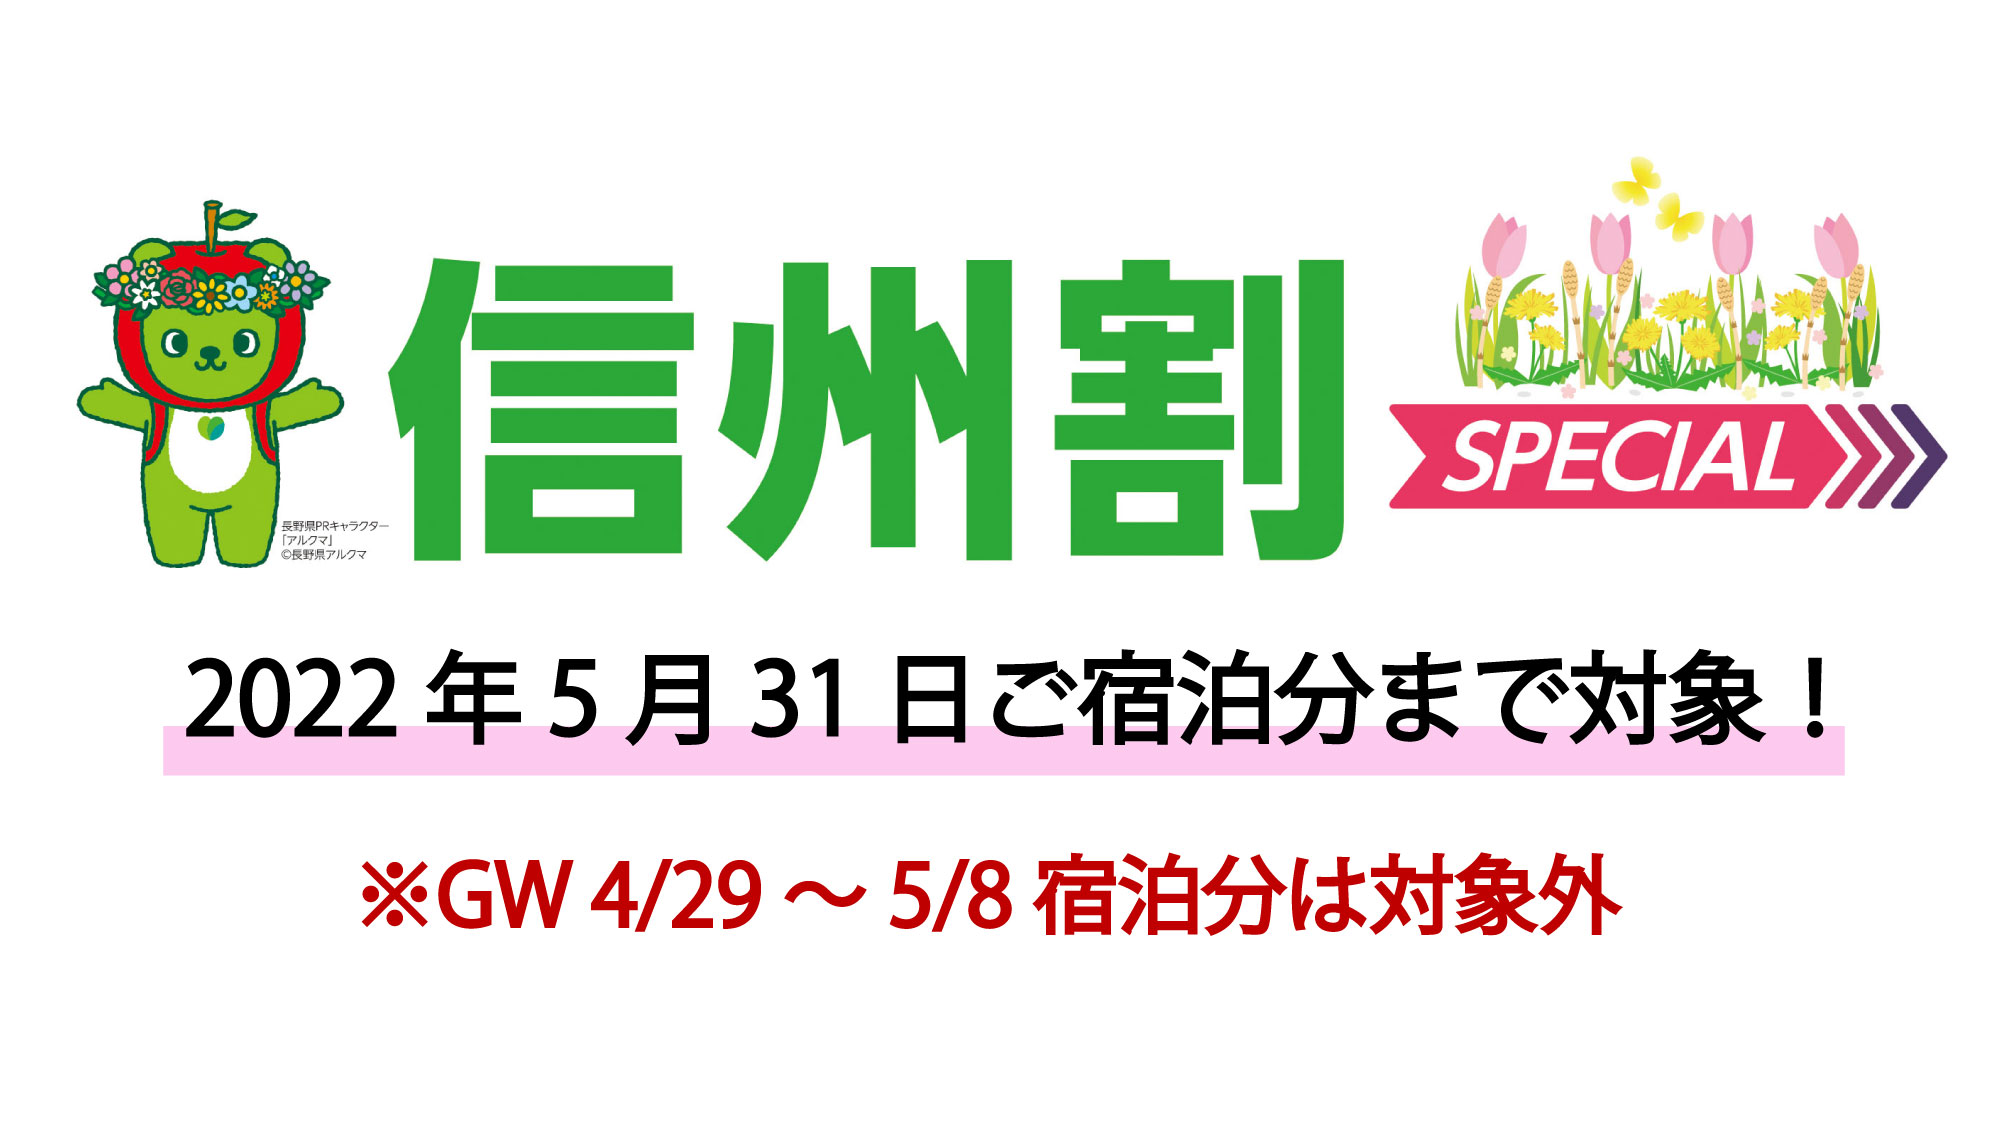 『信州割SPECIAL』対象県に新たに「岐阜県・静岡県・愛知県」が追加となりました！